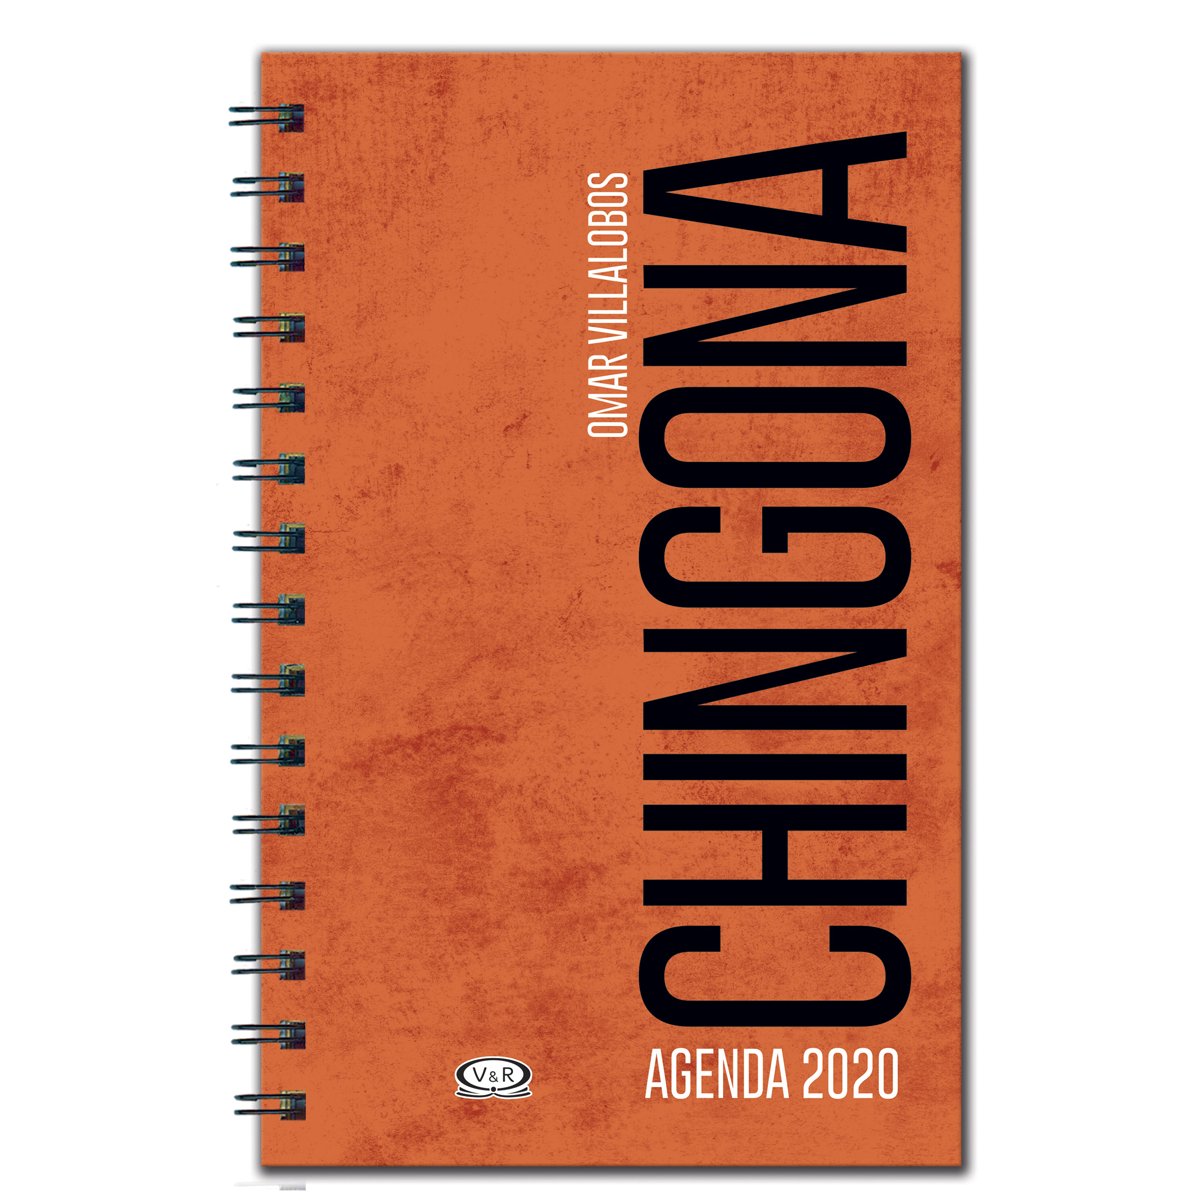 Agenda Chingona 2020 Vergara &amp; Riba